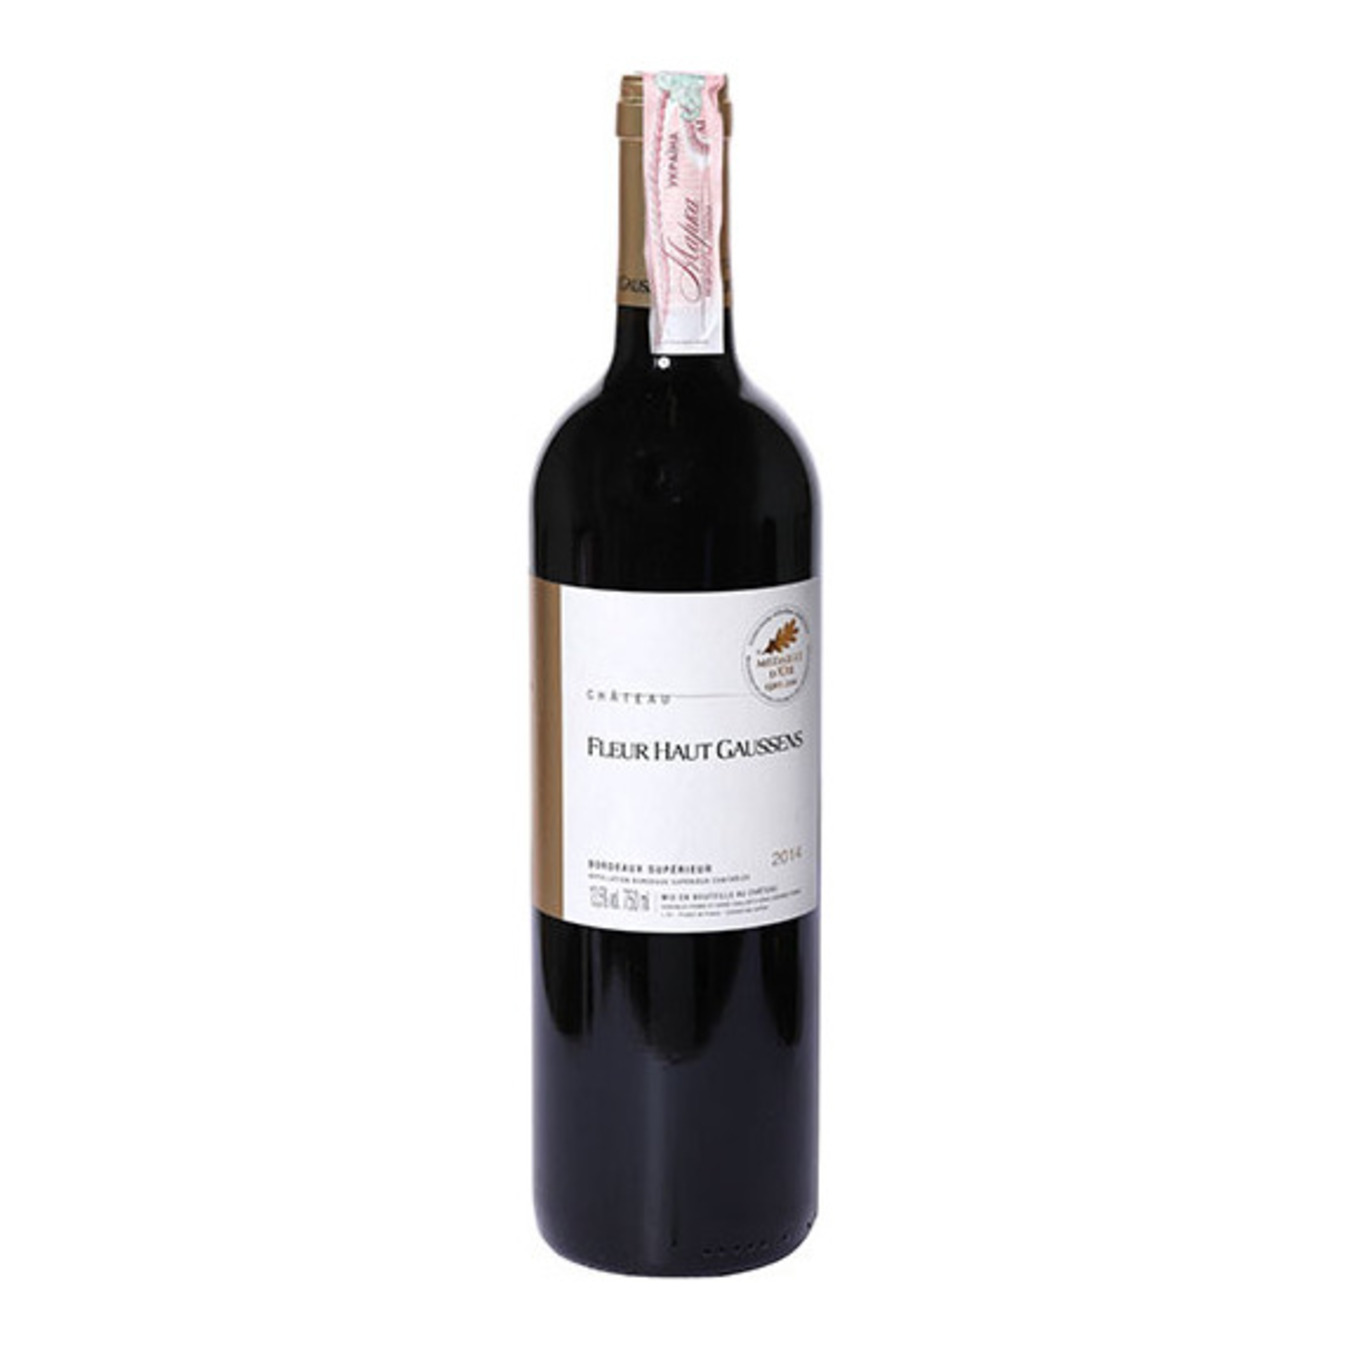 Wine Chateau Fleur Haut Gaussens Bordeaux Superieur red dry 13,5% 0,75l